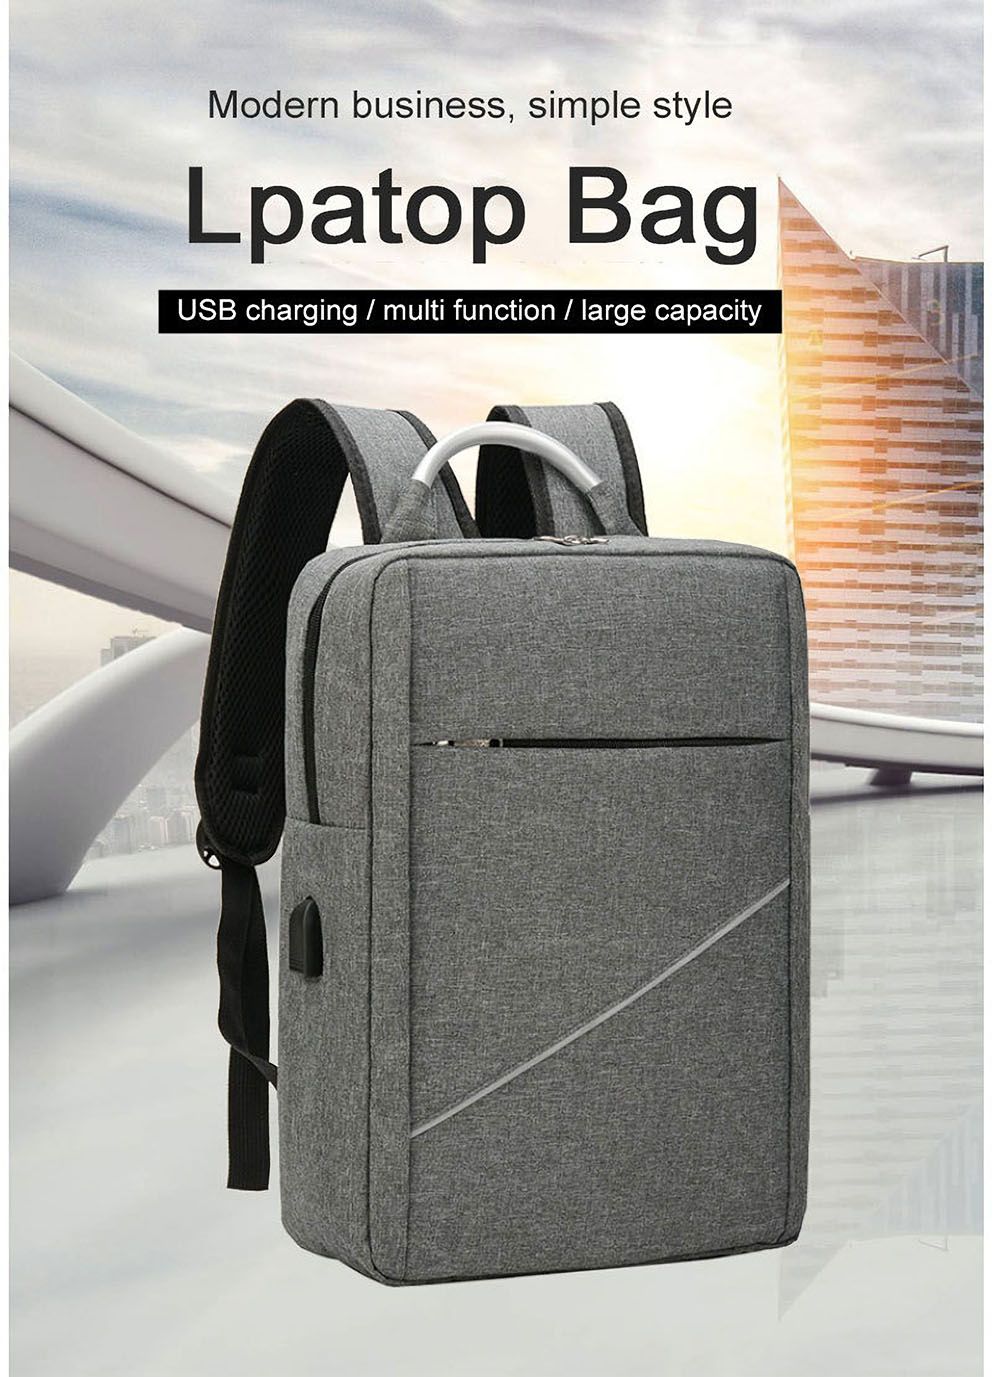 Business-Laptop-Bag-Backpack-Waterproof-USB-Charging-Computer-Storage-Bag-Travel-Schoolbag-for-156-i-1765680